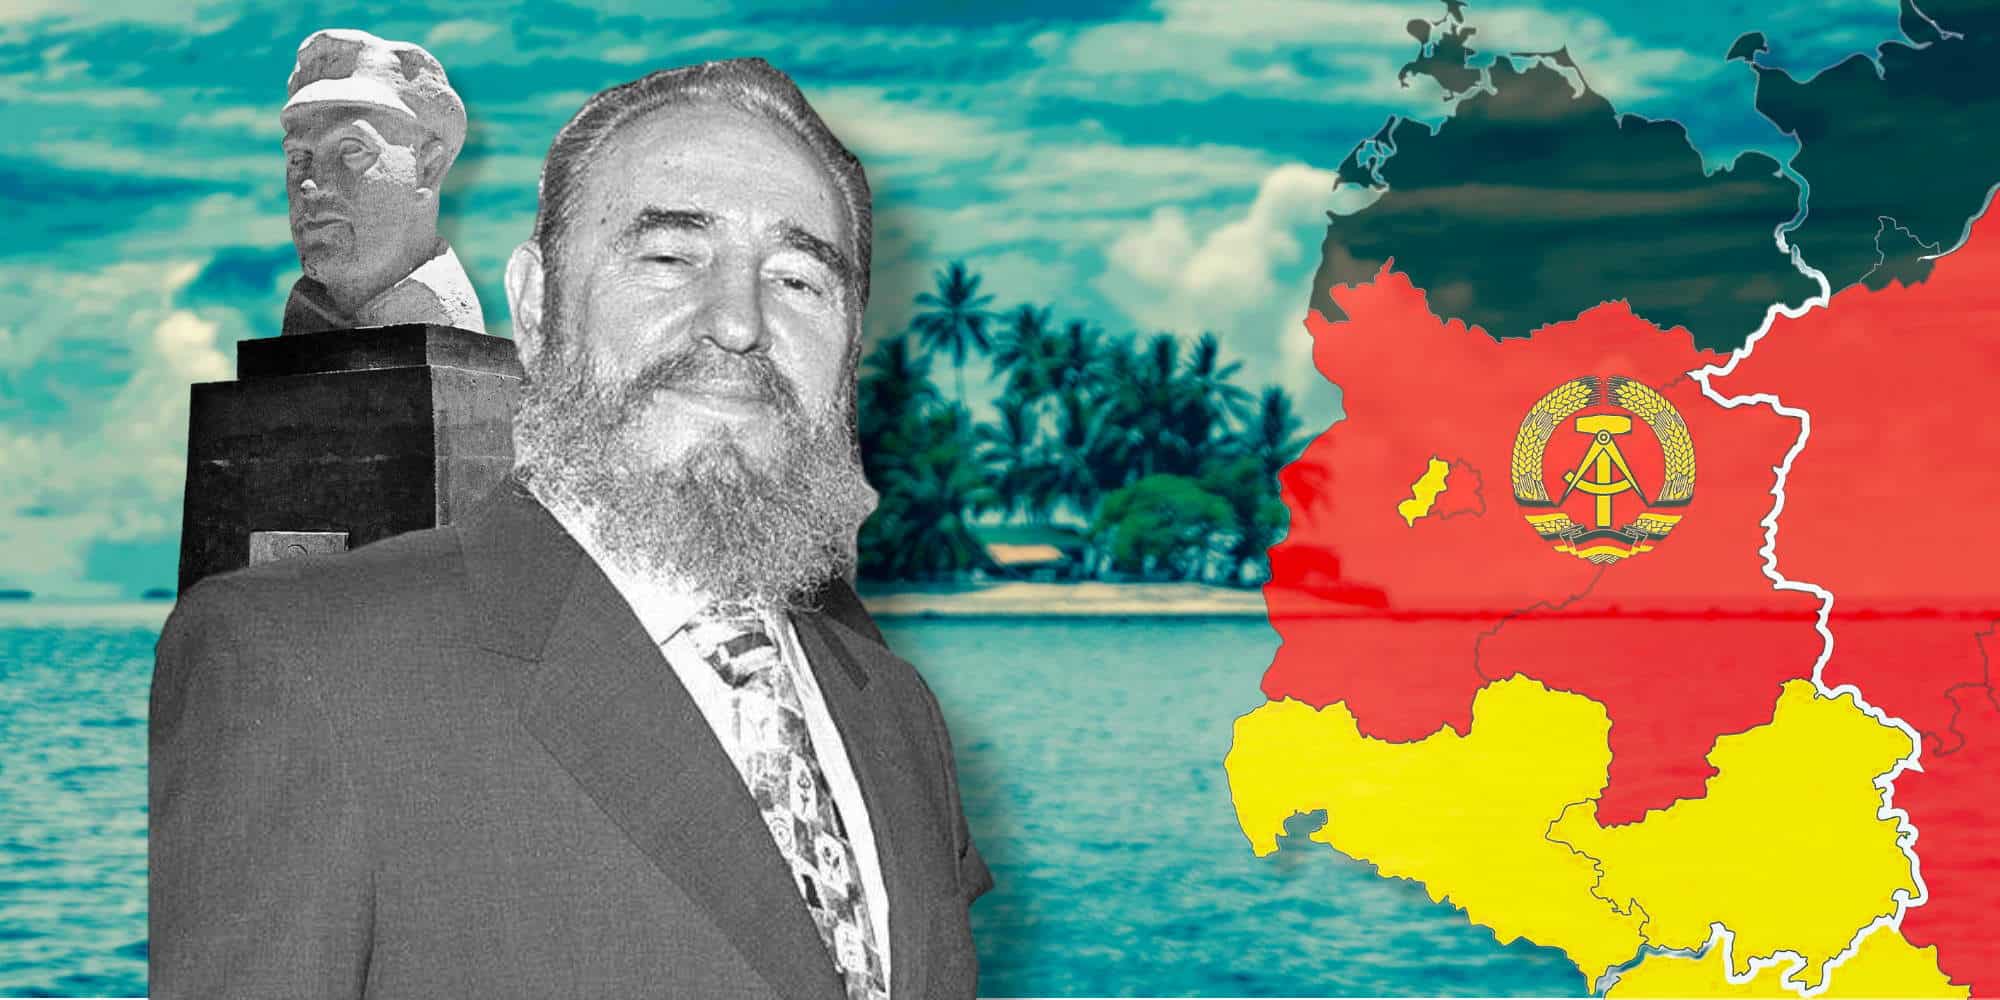 Ο Φιντέλ Κάστρο και το μικρό ακατοίκητο νησί που έκανε δώρο στην Ανατολική Γερμανία